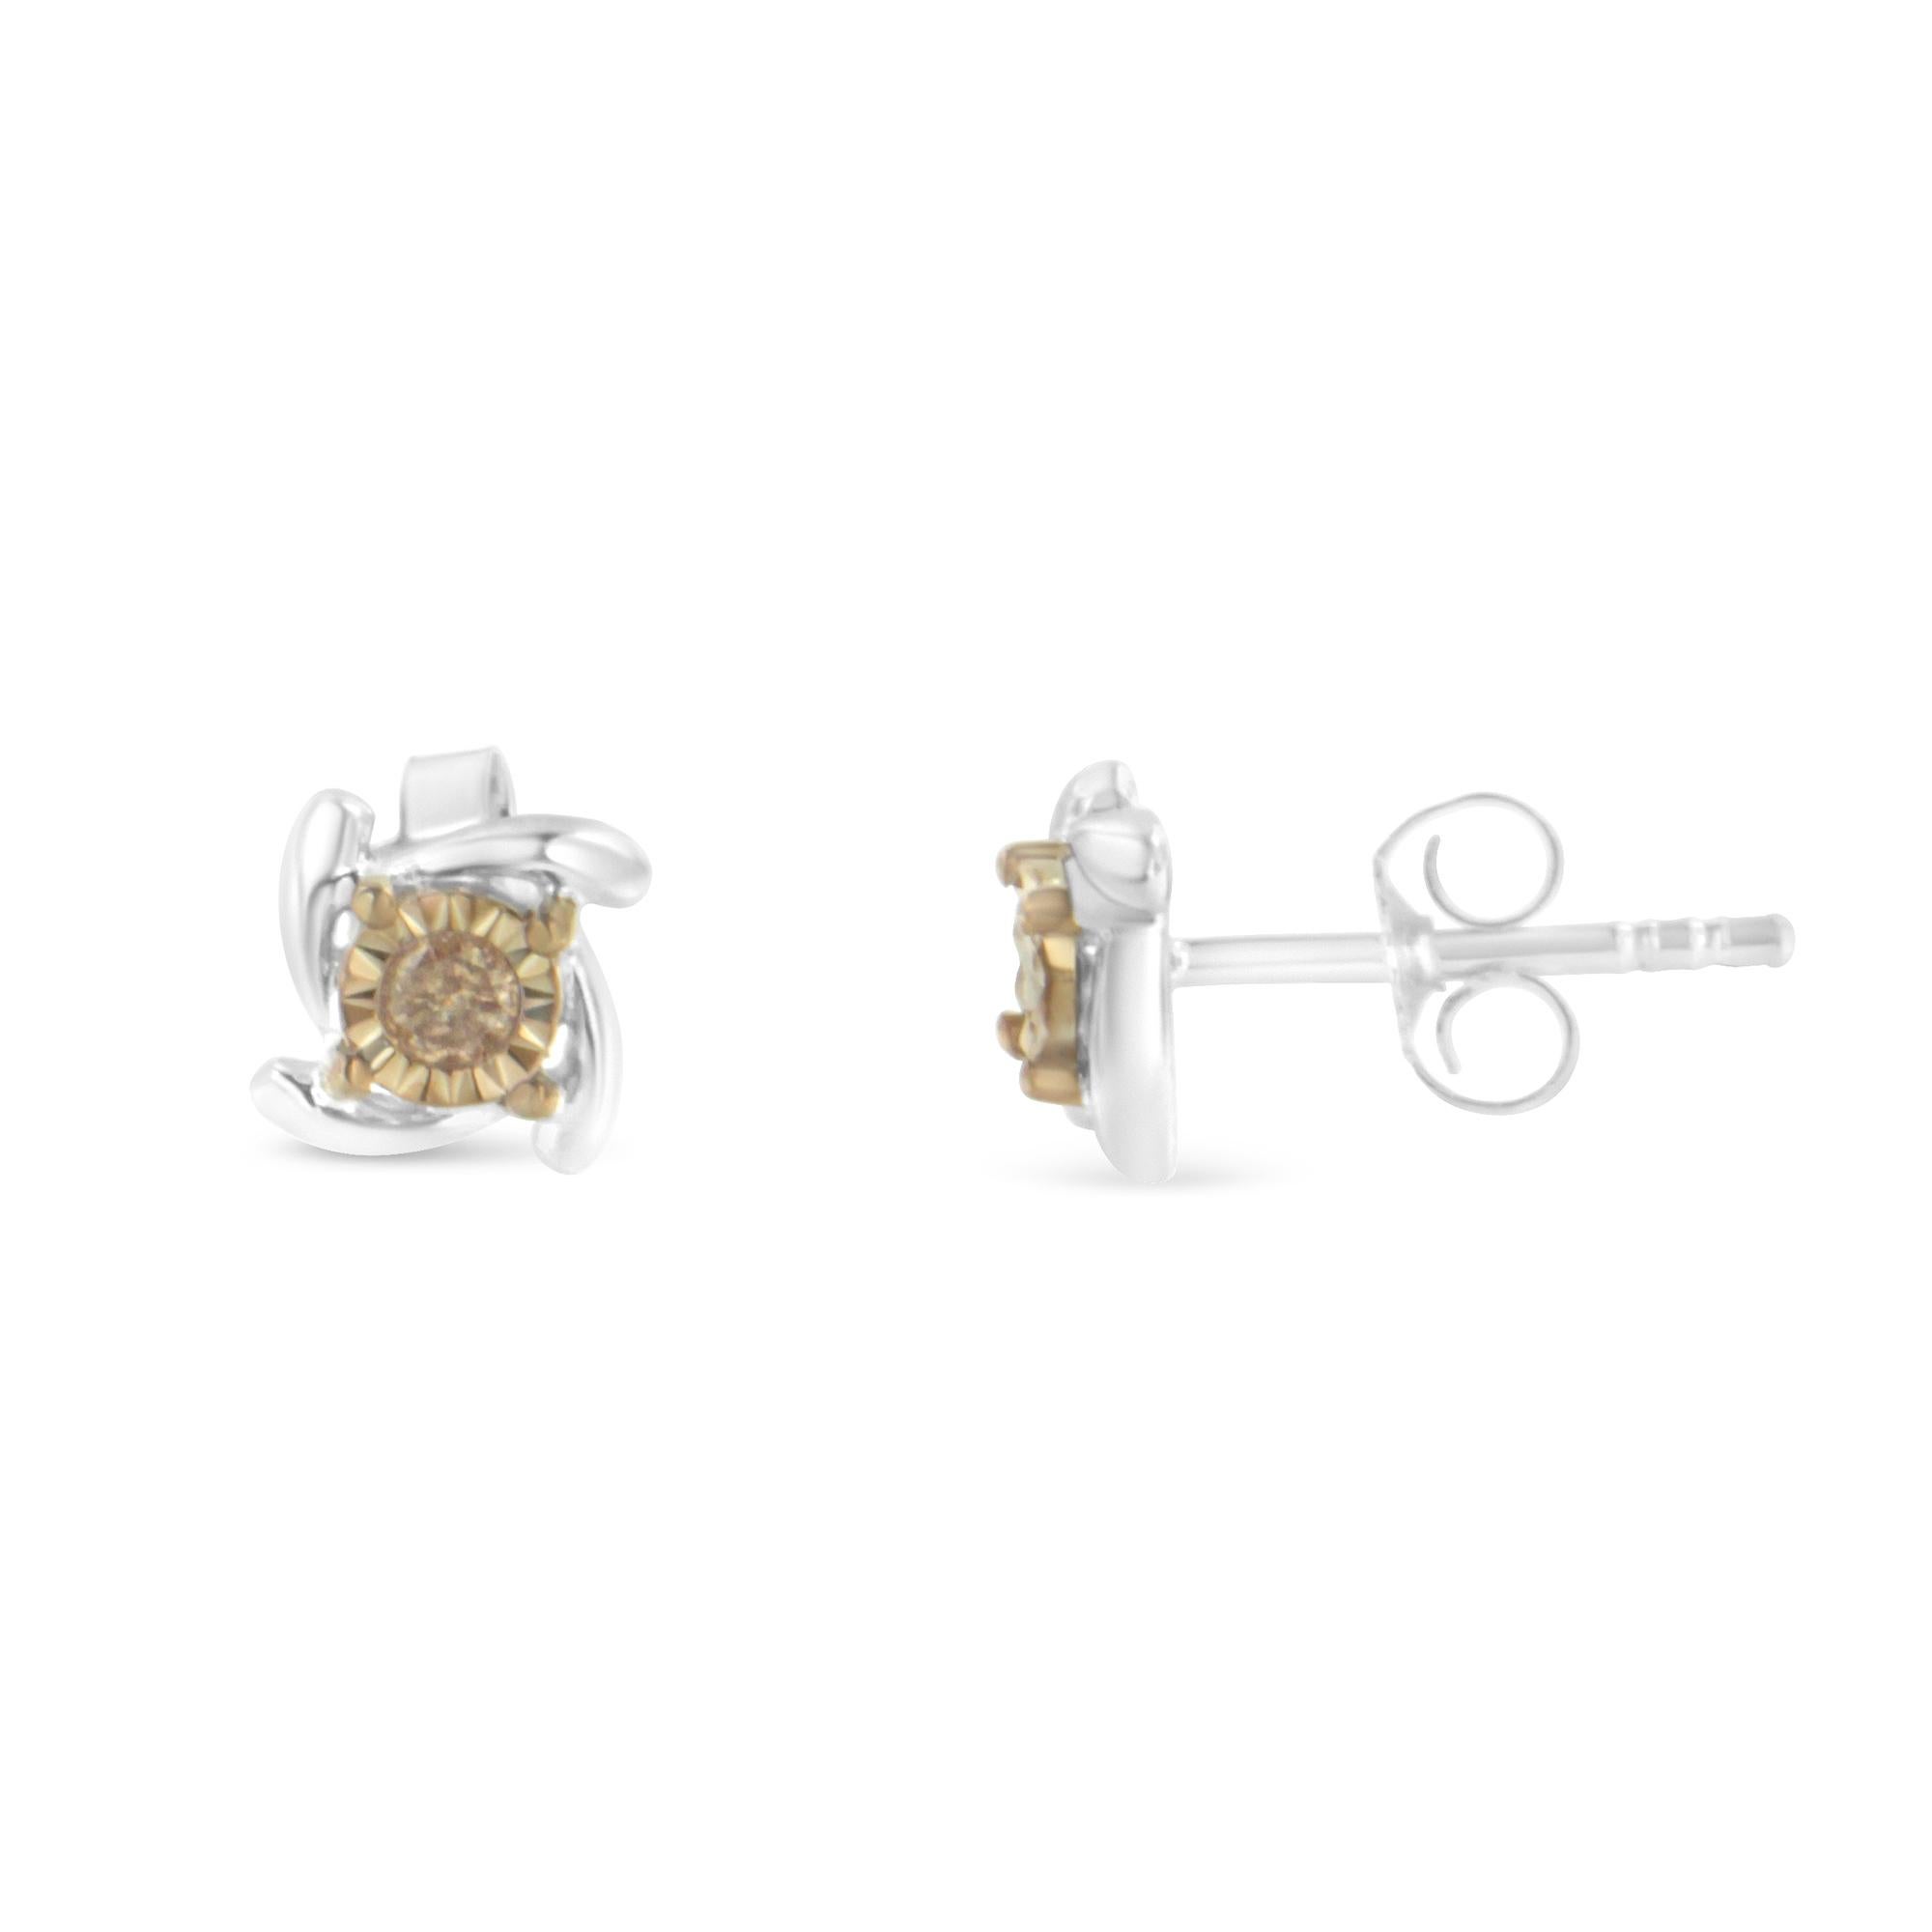 1/10 diamond stud earrings